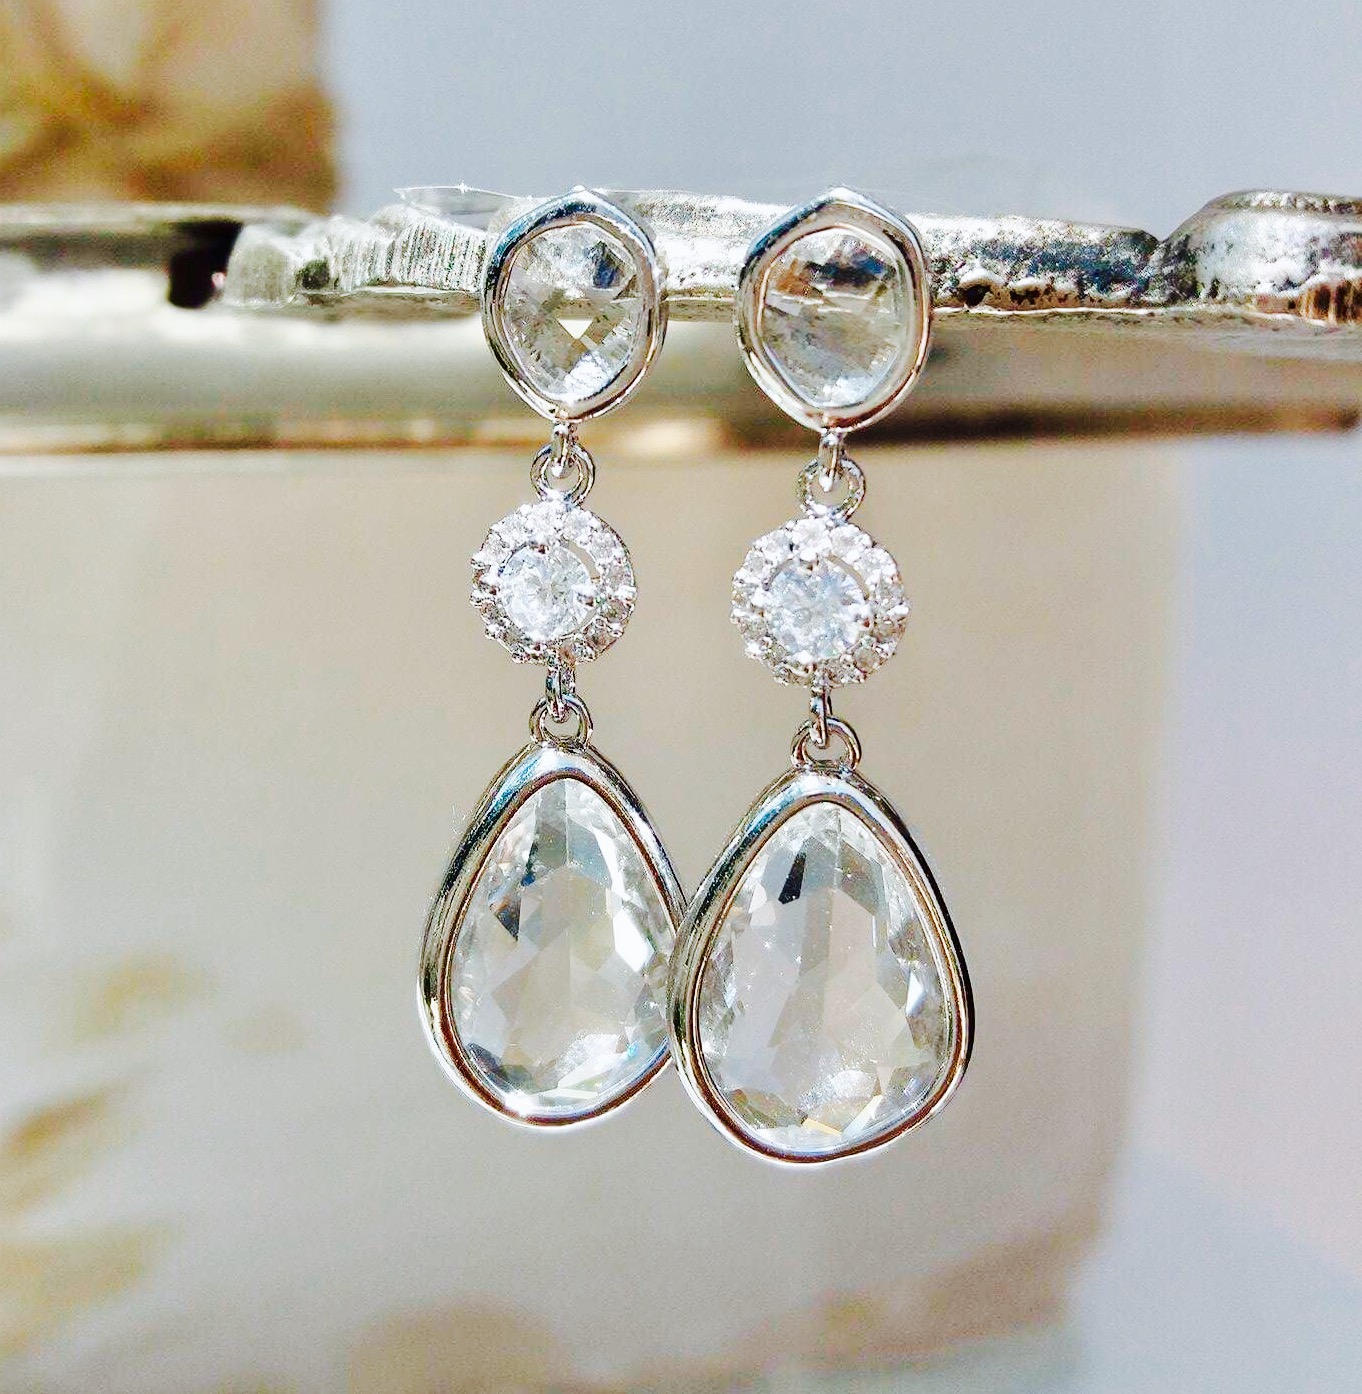 Bridal crystal earrings Silver teardrop earrings Crystal | Etsy